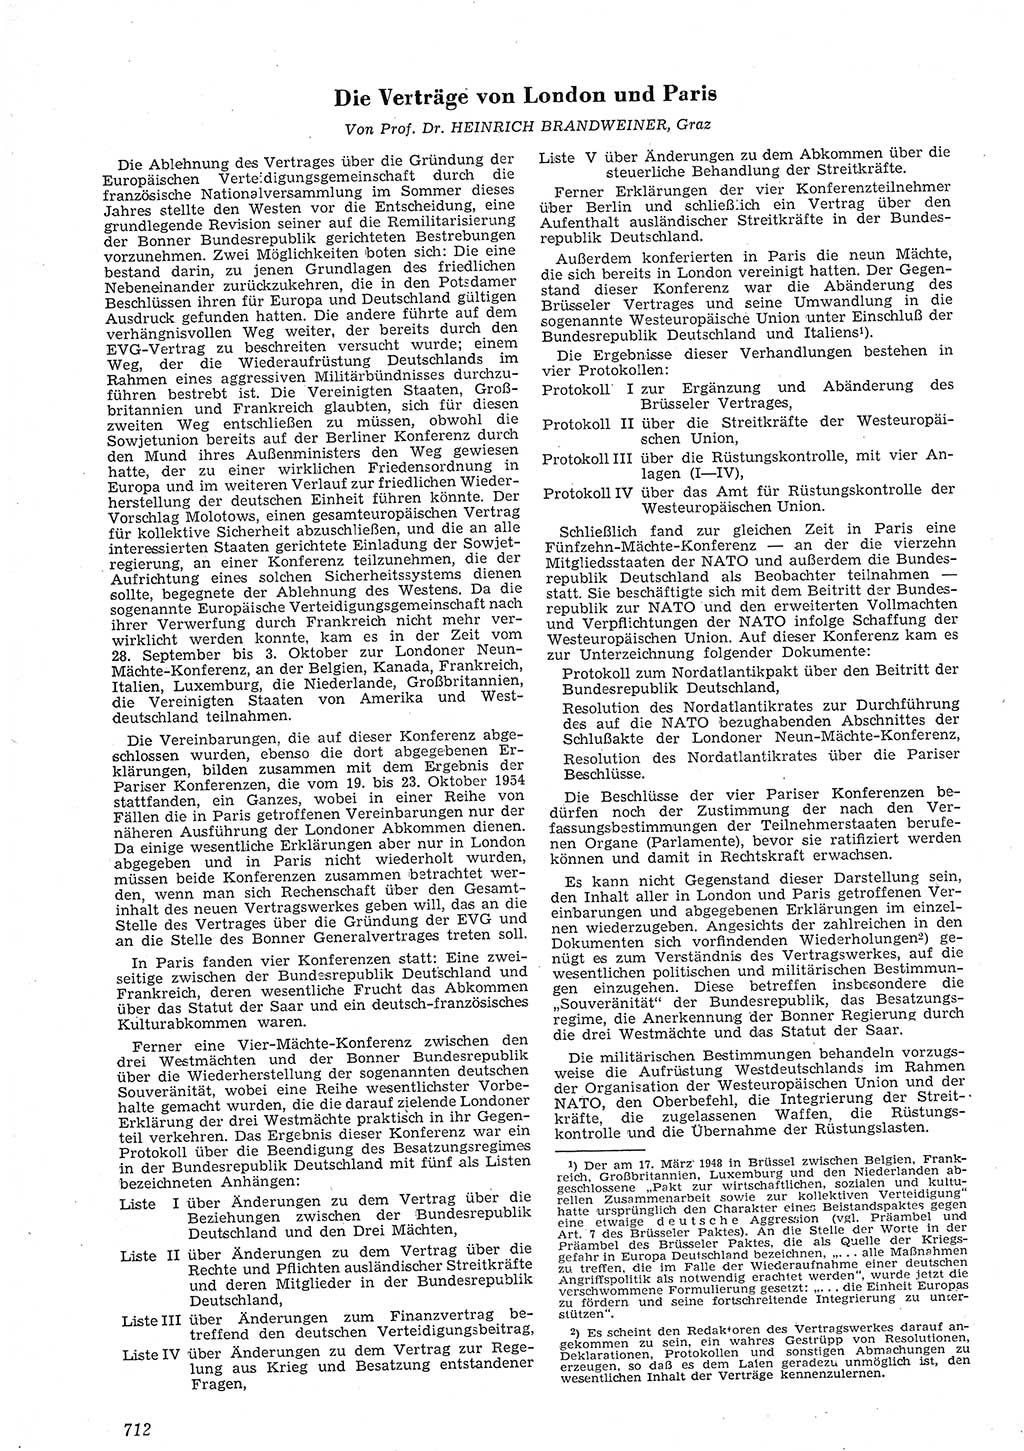 Neue Justiz (NJ), Zeitschrift für Recht und Rechtswissenschaft [Deutsche Demokratische Republik (DDR)], 8. Jahrgang 1954, Seite 712 (NJ DDR 1954, S. 712)